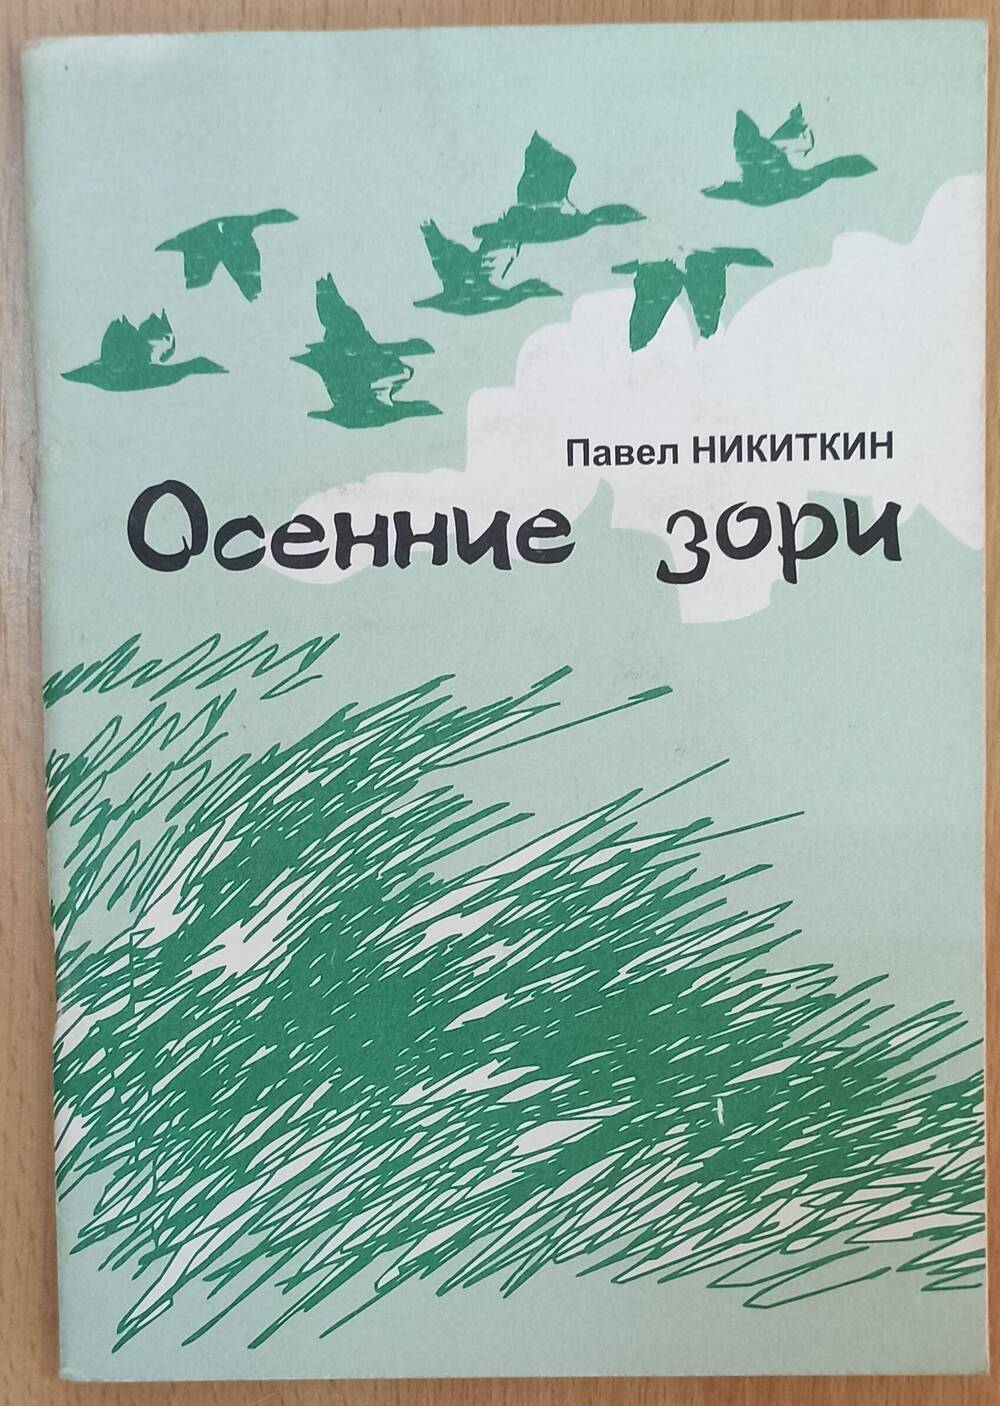 Книга. Павел Никитин Осенние зори, сборник стихов.